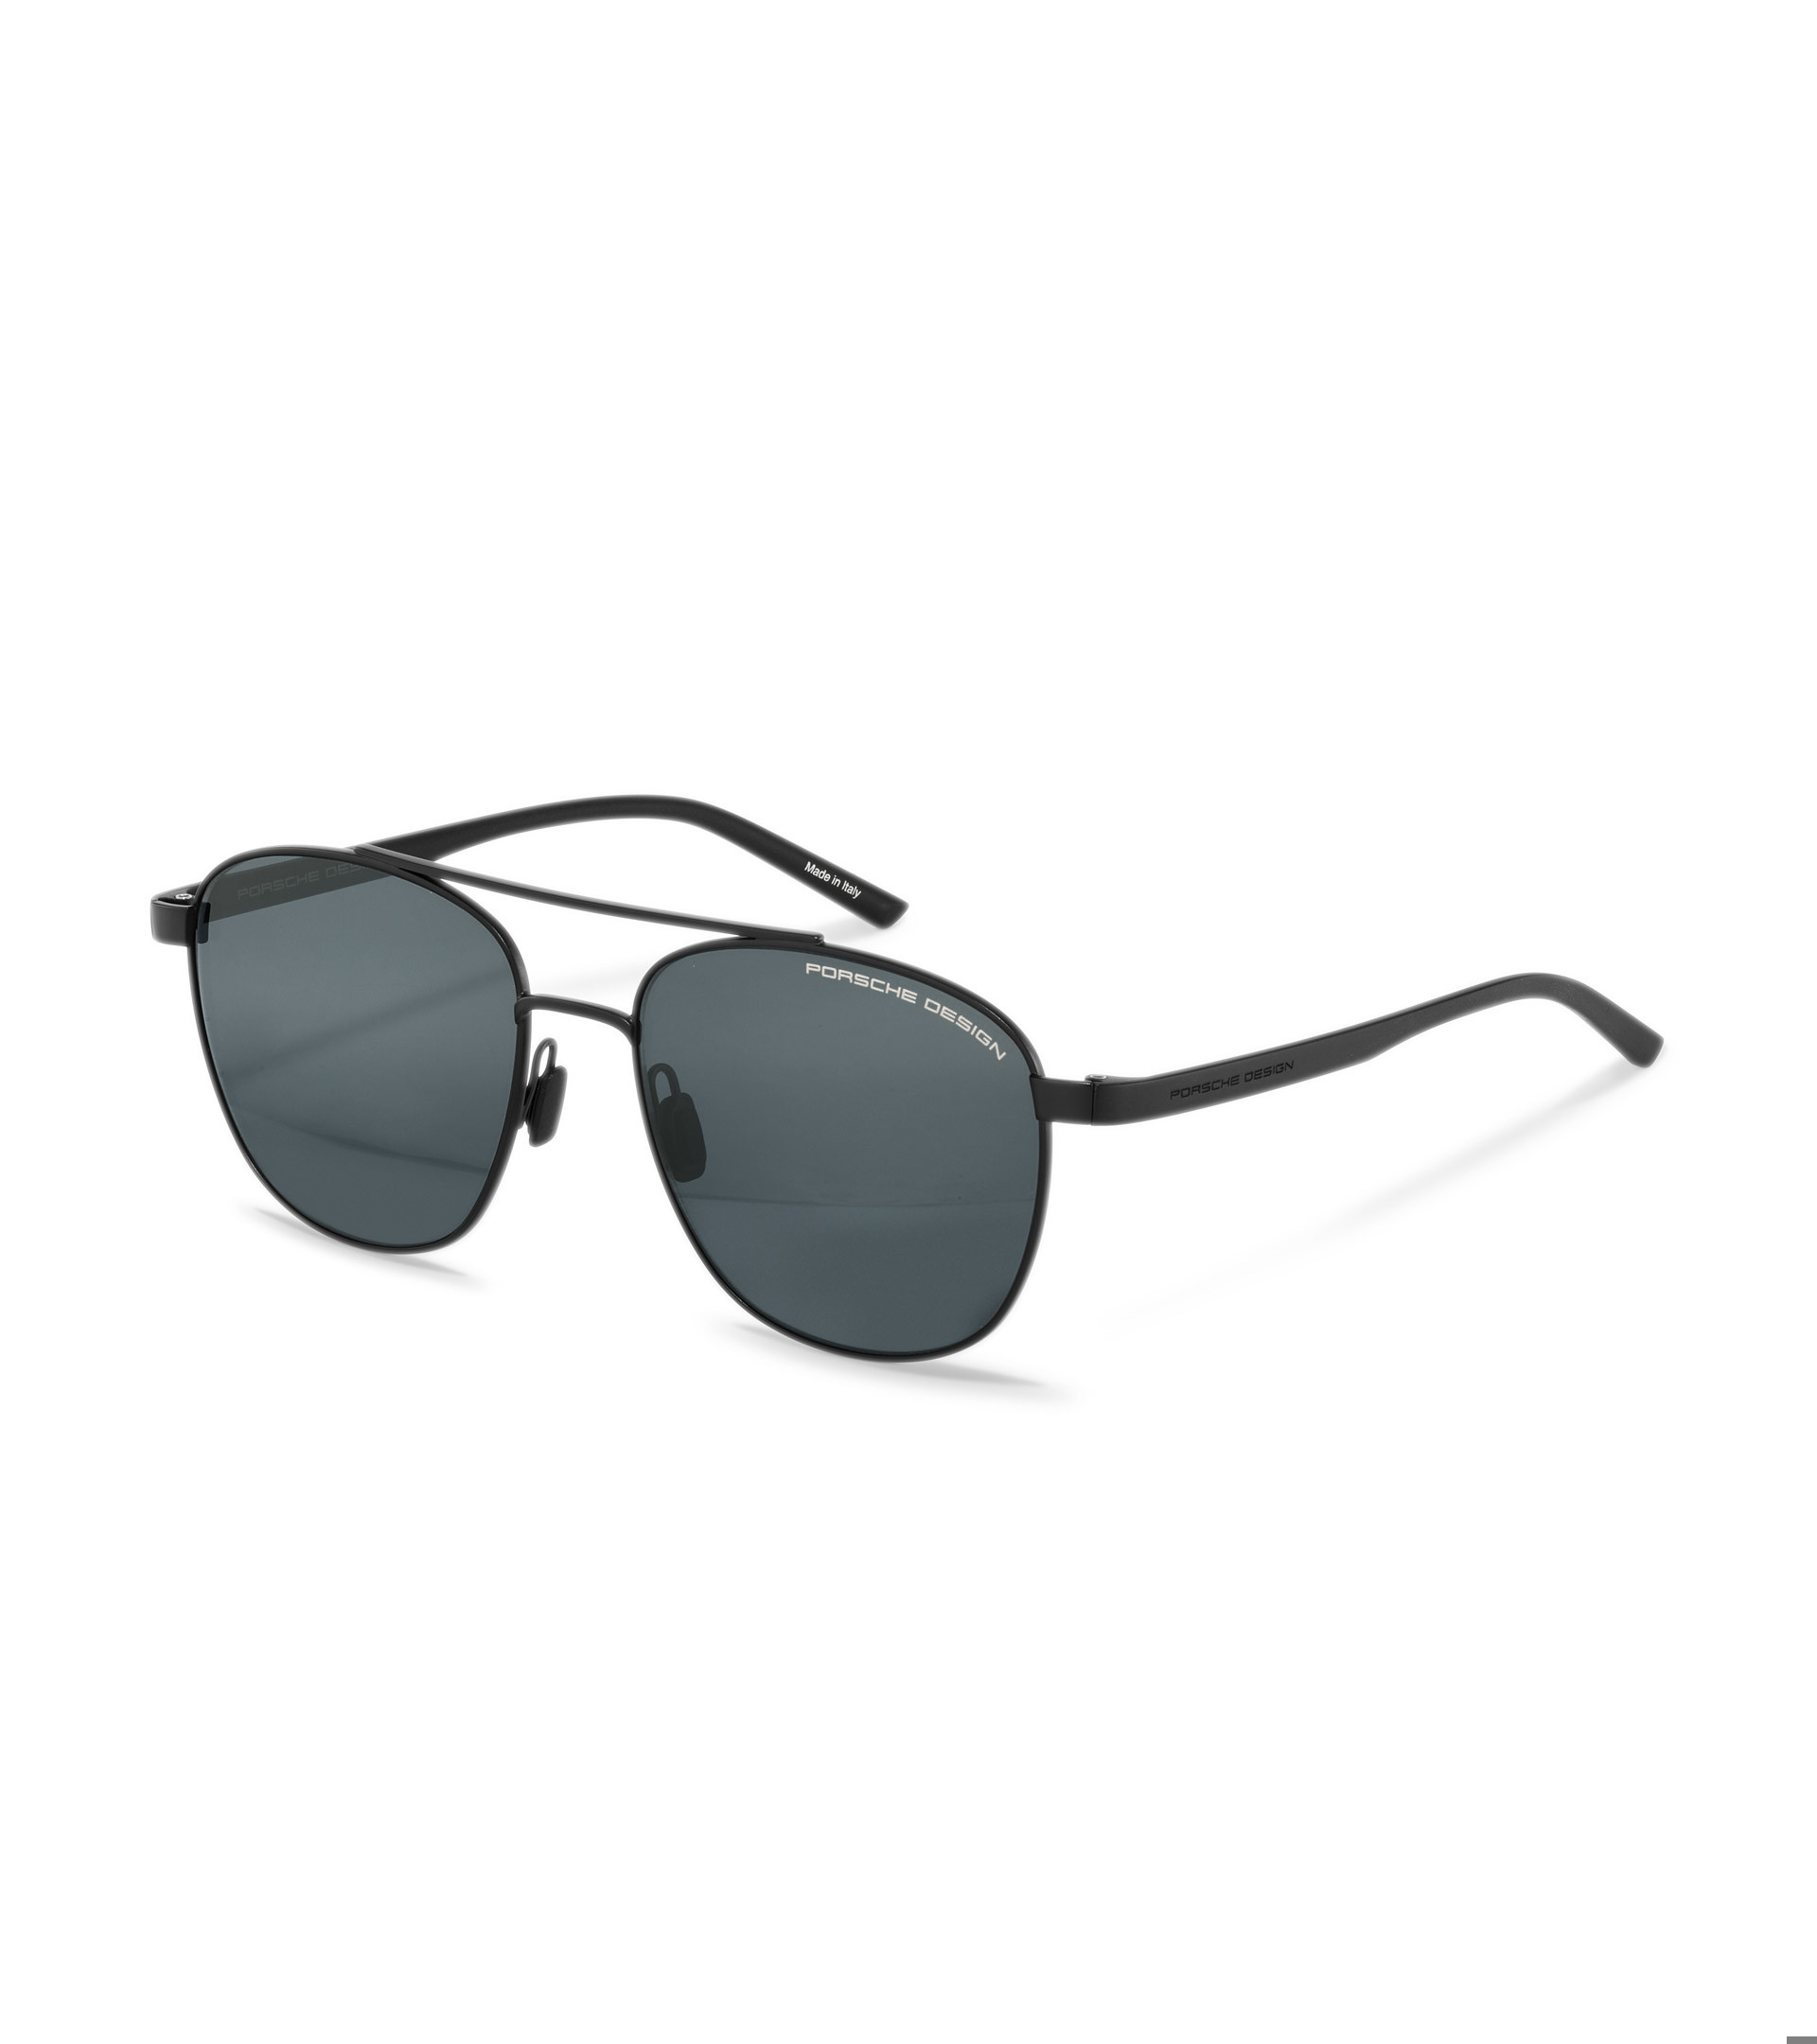 Sunglasses - Square Sunglasses for | Porsche Design Porsche Design